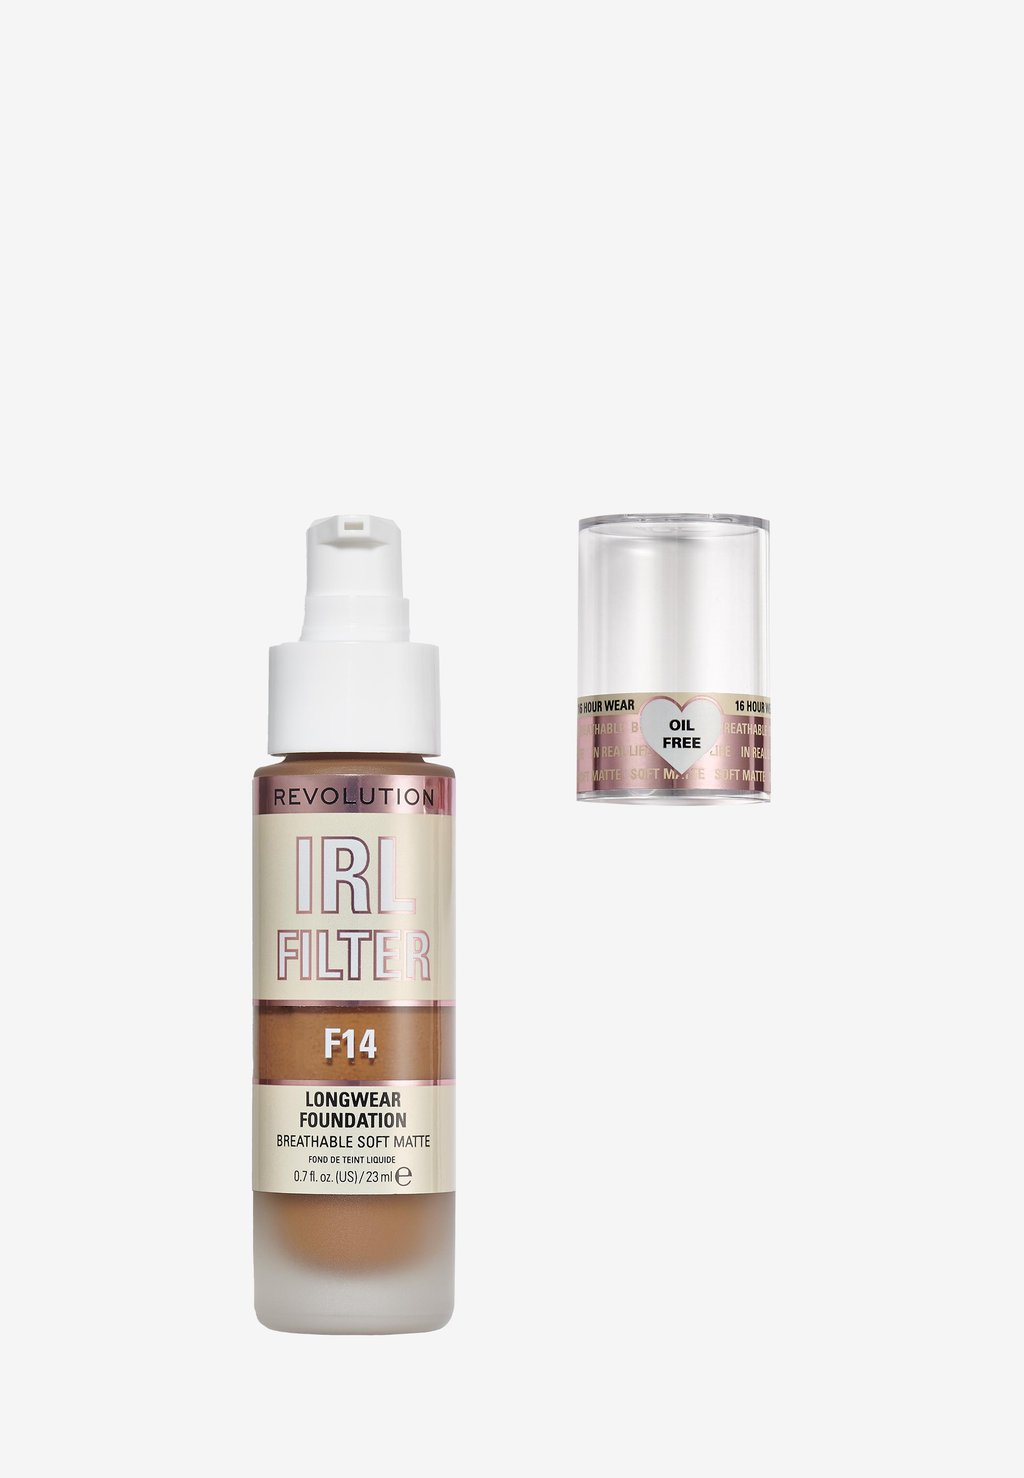 Тональный крем Irl Filter Longwear Foundation Makeup Revolution, цвет f14